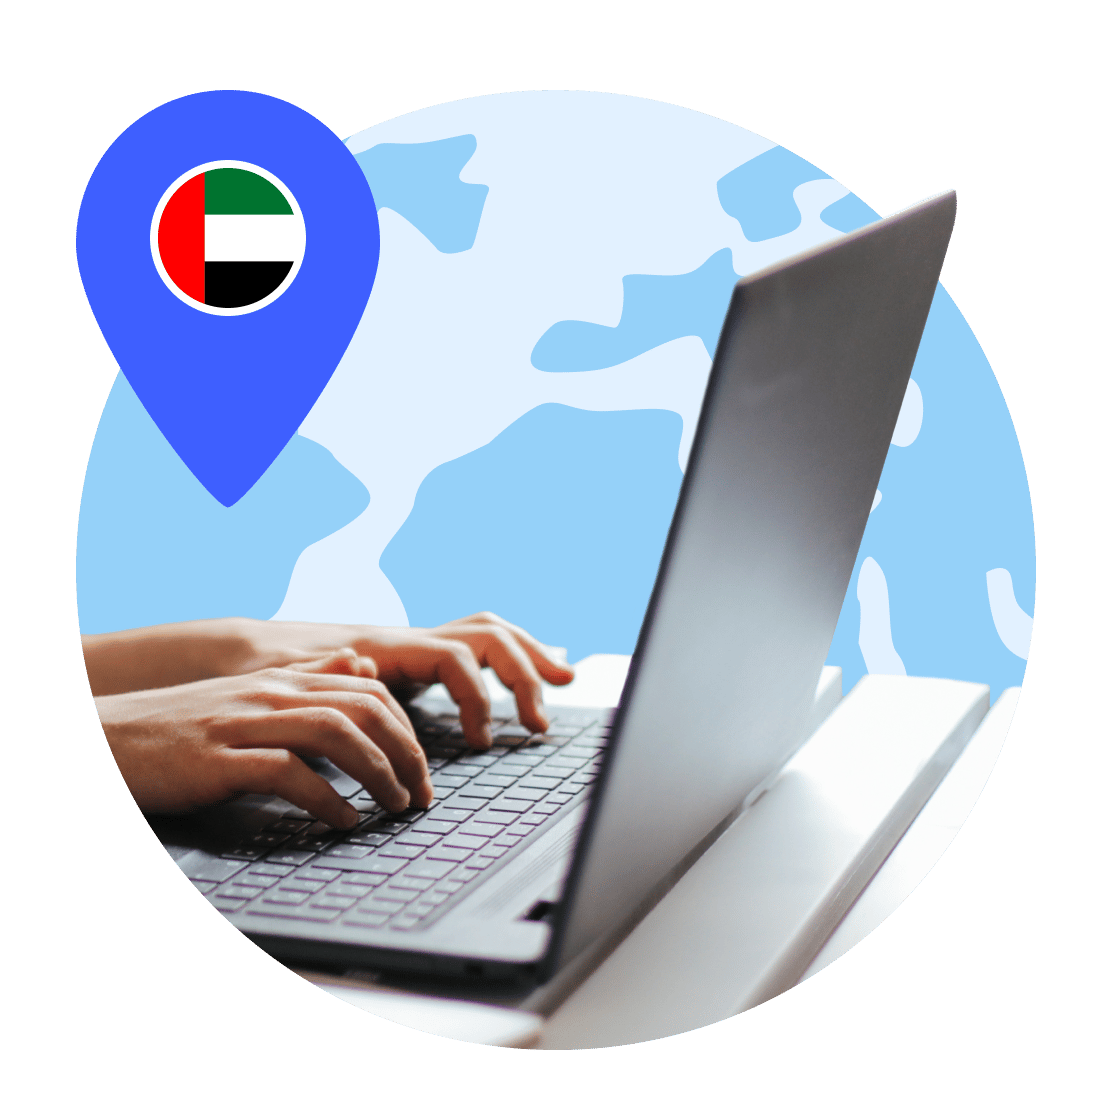 Henkilö työskentelee kannettavalla tietokoneellaan ollessaan yhdistetty Yhdistyneissä arabiemiirikunnissa sijaitsevaan VPN-palvelimeen.